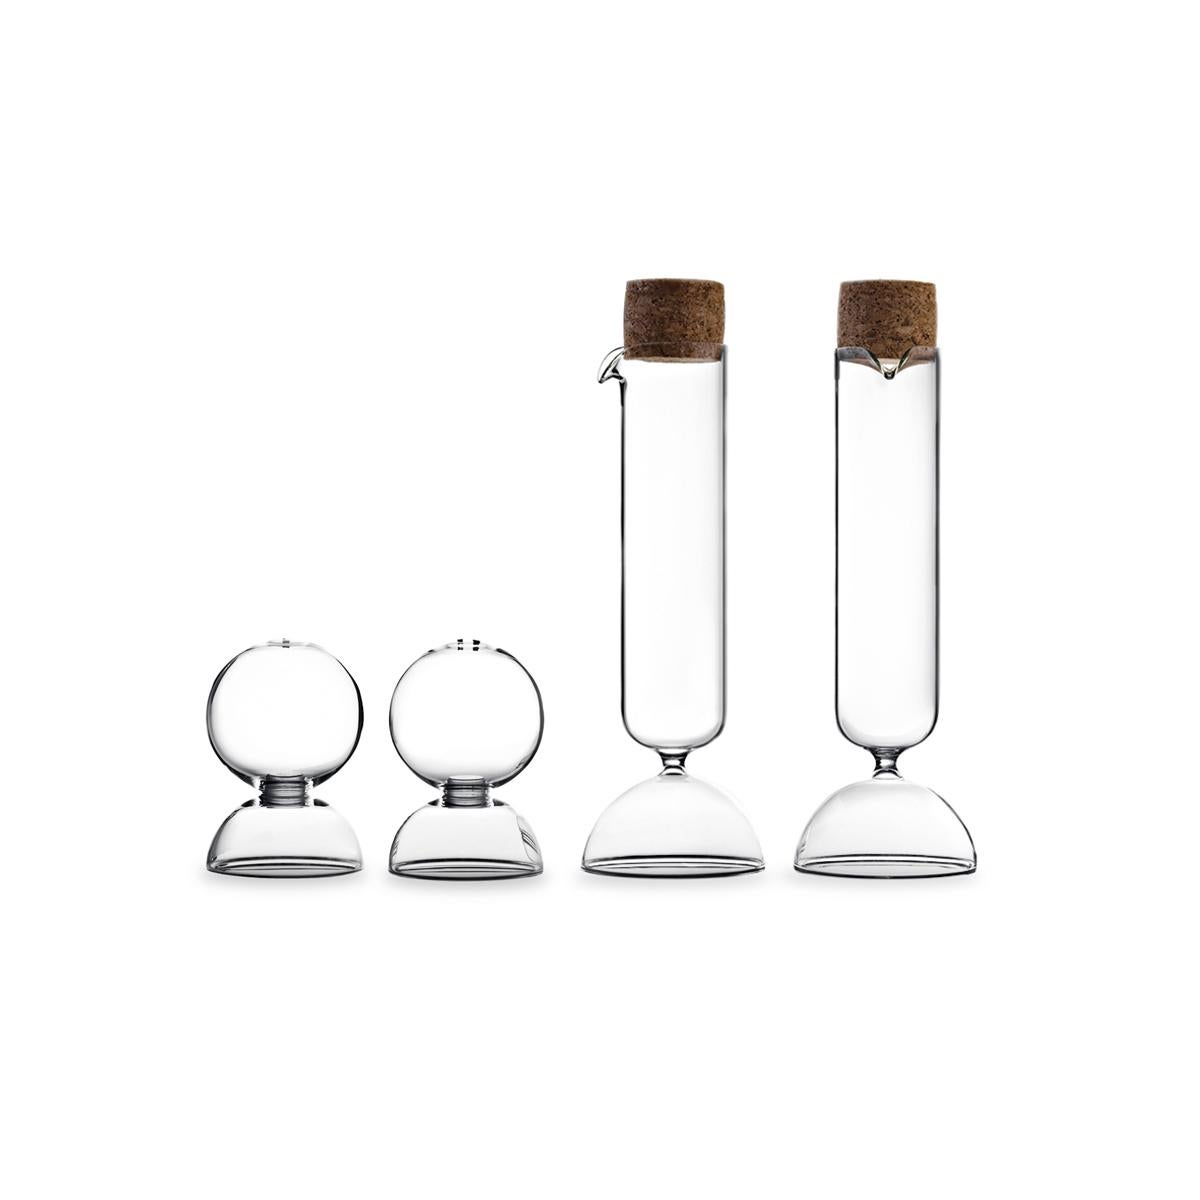 Bubble, entworfen von Gordon Guillaumier, ist ein Salz- und Pfefferstreuer-Set aus transparentem mundgeblasenem Glas. Zur gleichen Familie gehört auch das Öl- und Essigspender-Set, das ebenfalls auf 1stdibs angeboten wird.